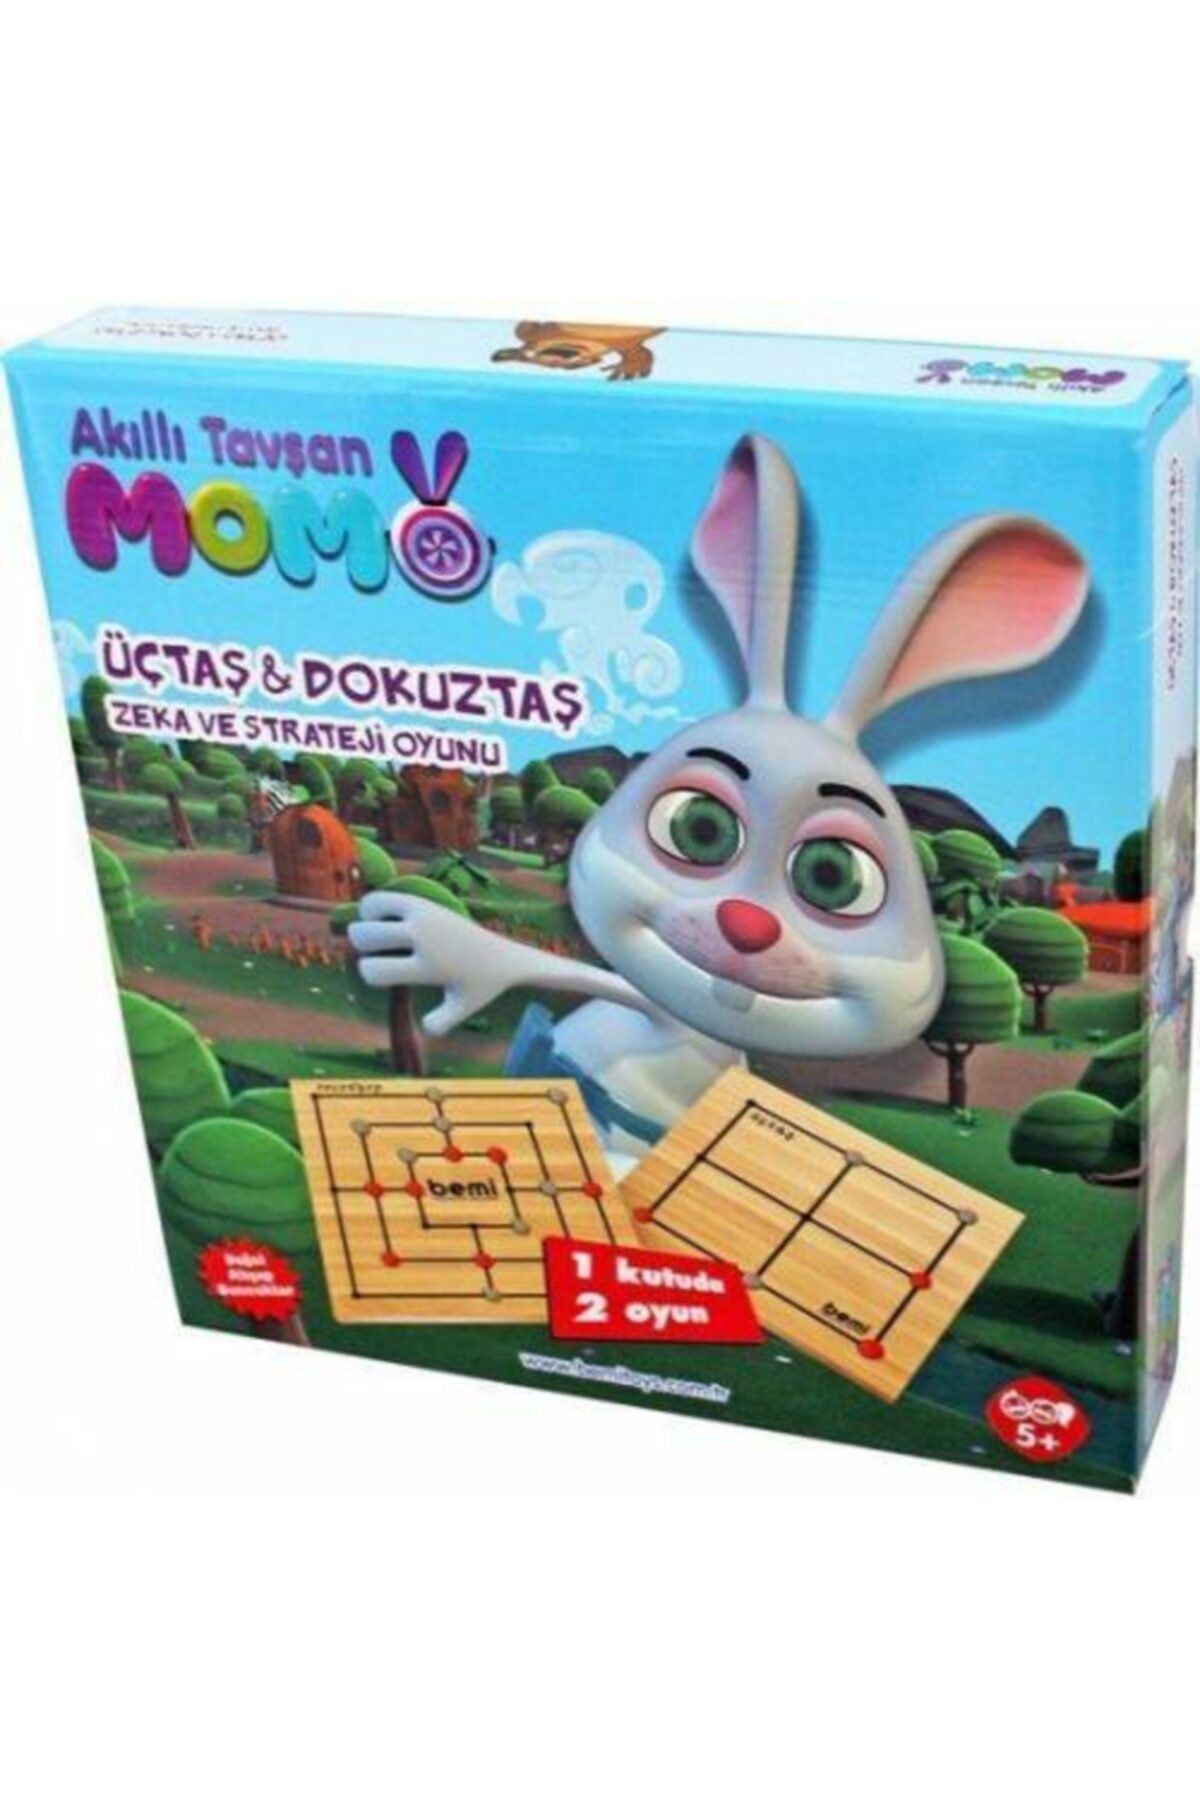 BEMİ Trt Çocuk Akıllı Tavşan Momo Üçtaş & Dokuz Taş Zeka Ve Strateji Oyunu